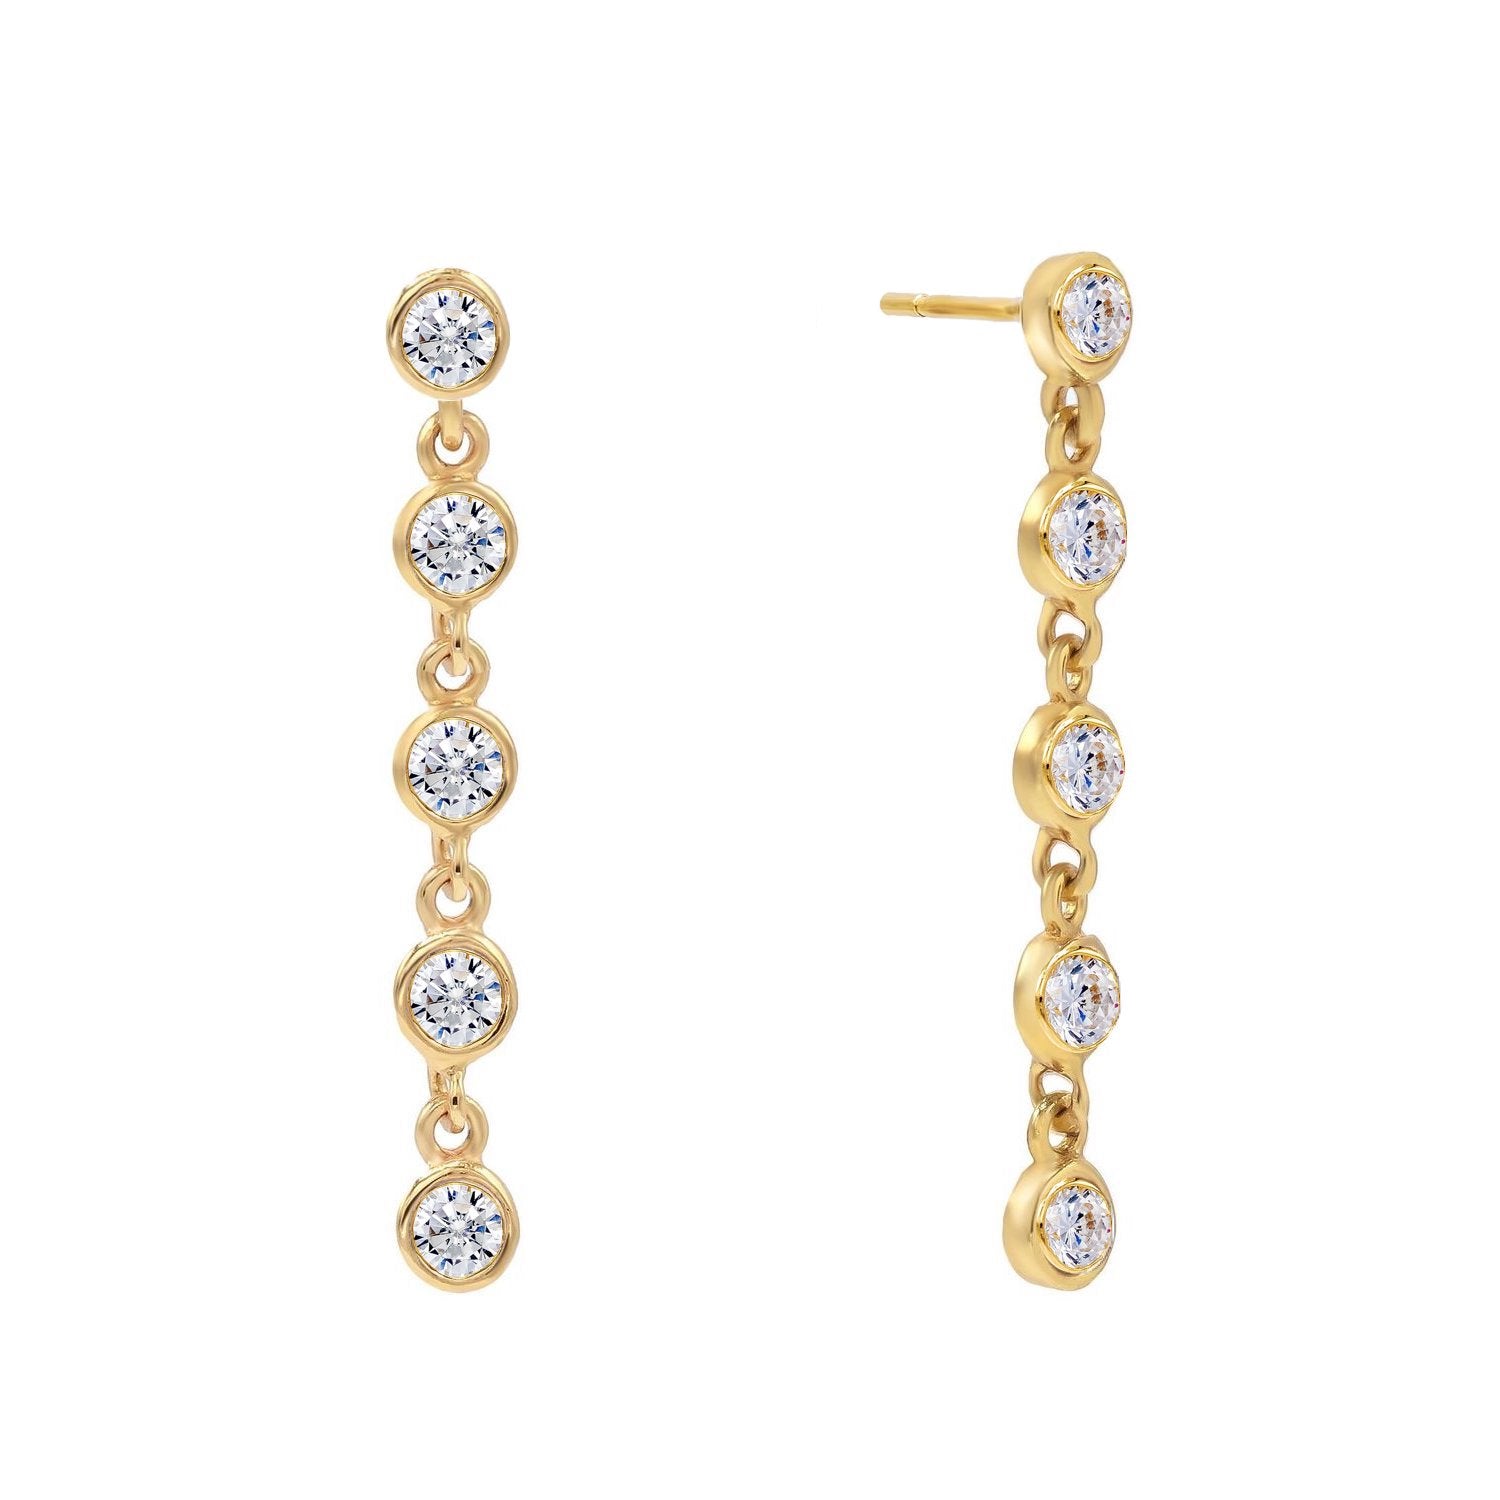 J&CO Jewellery Fall in Love Drop Earrings